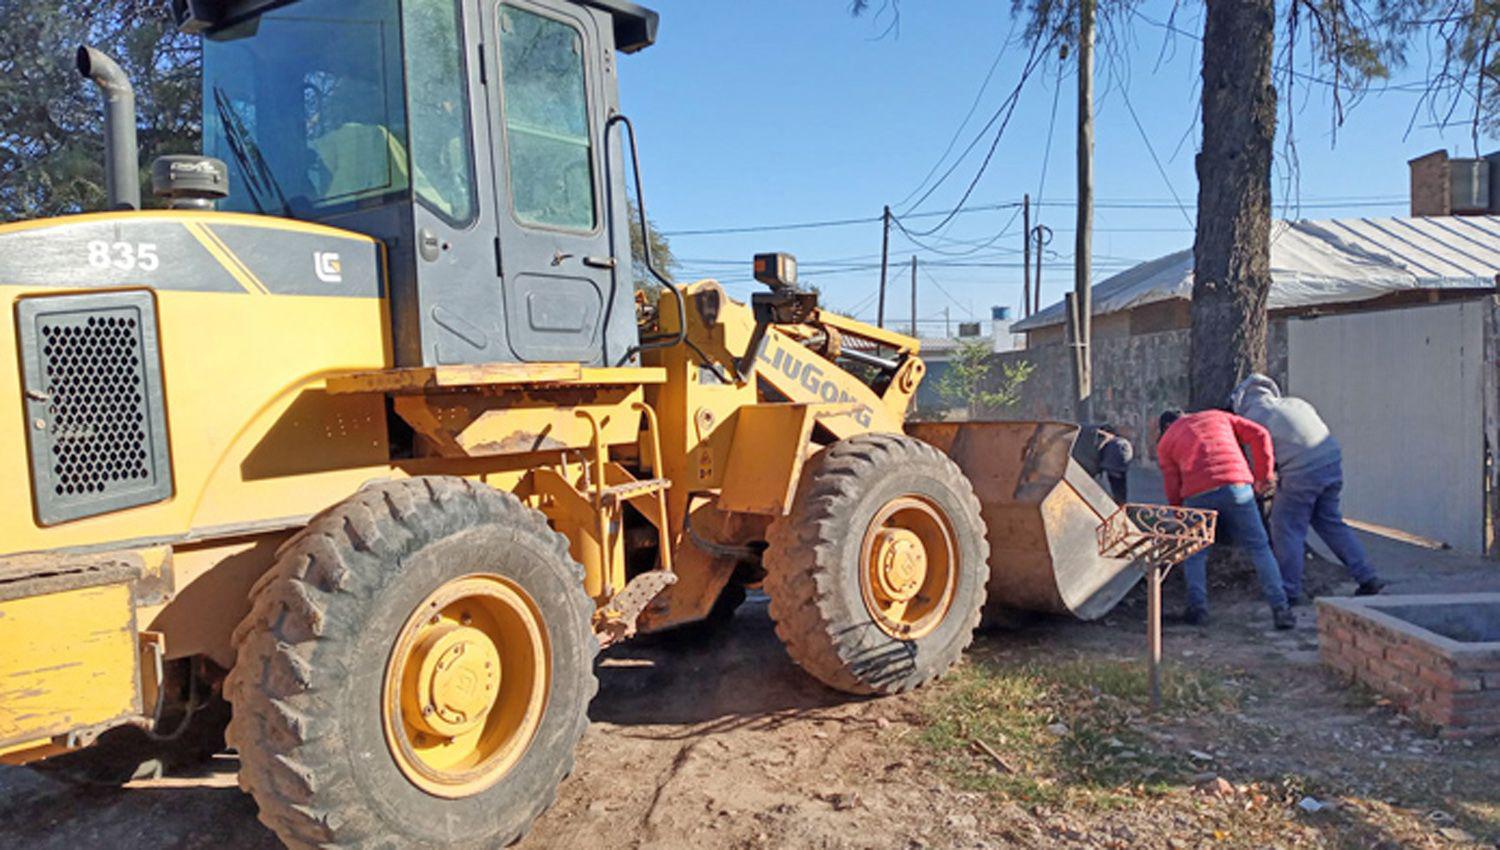 Concretaron un operativo integral en los barrios 120 Viviendas y Santa Rita